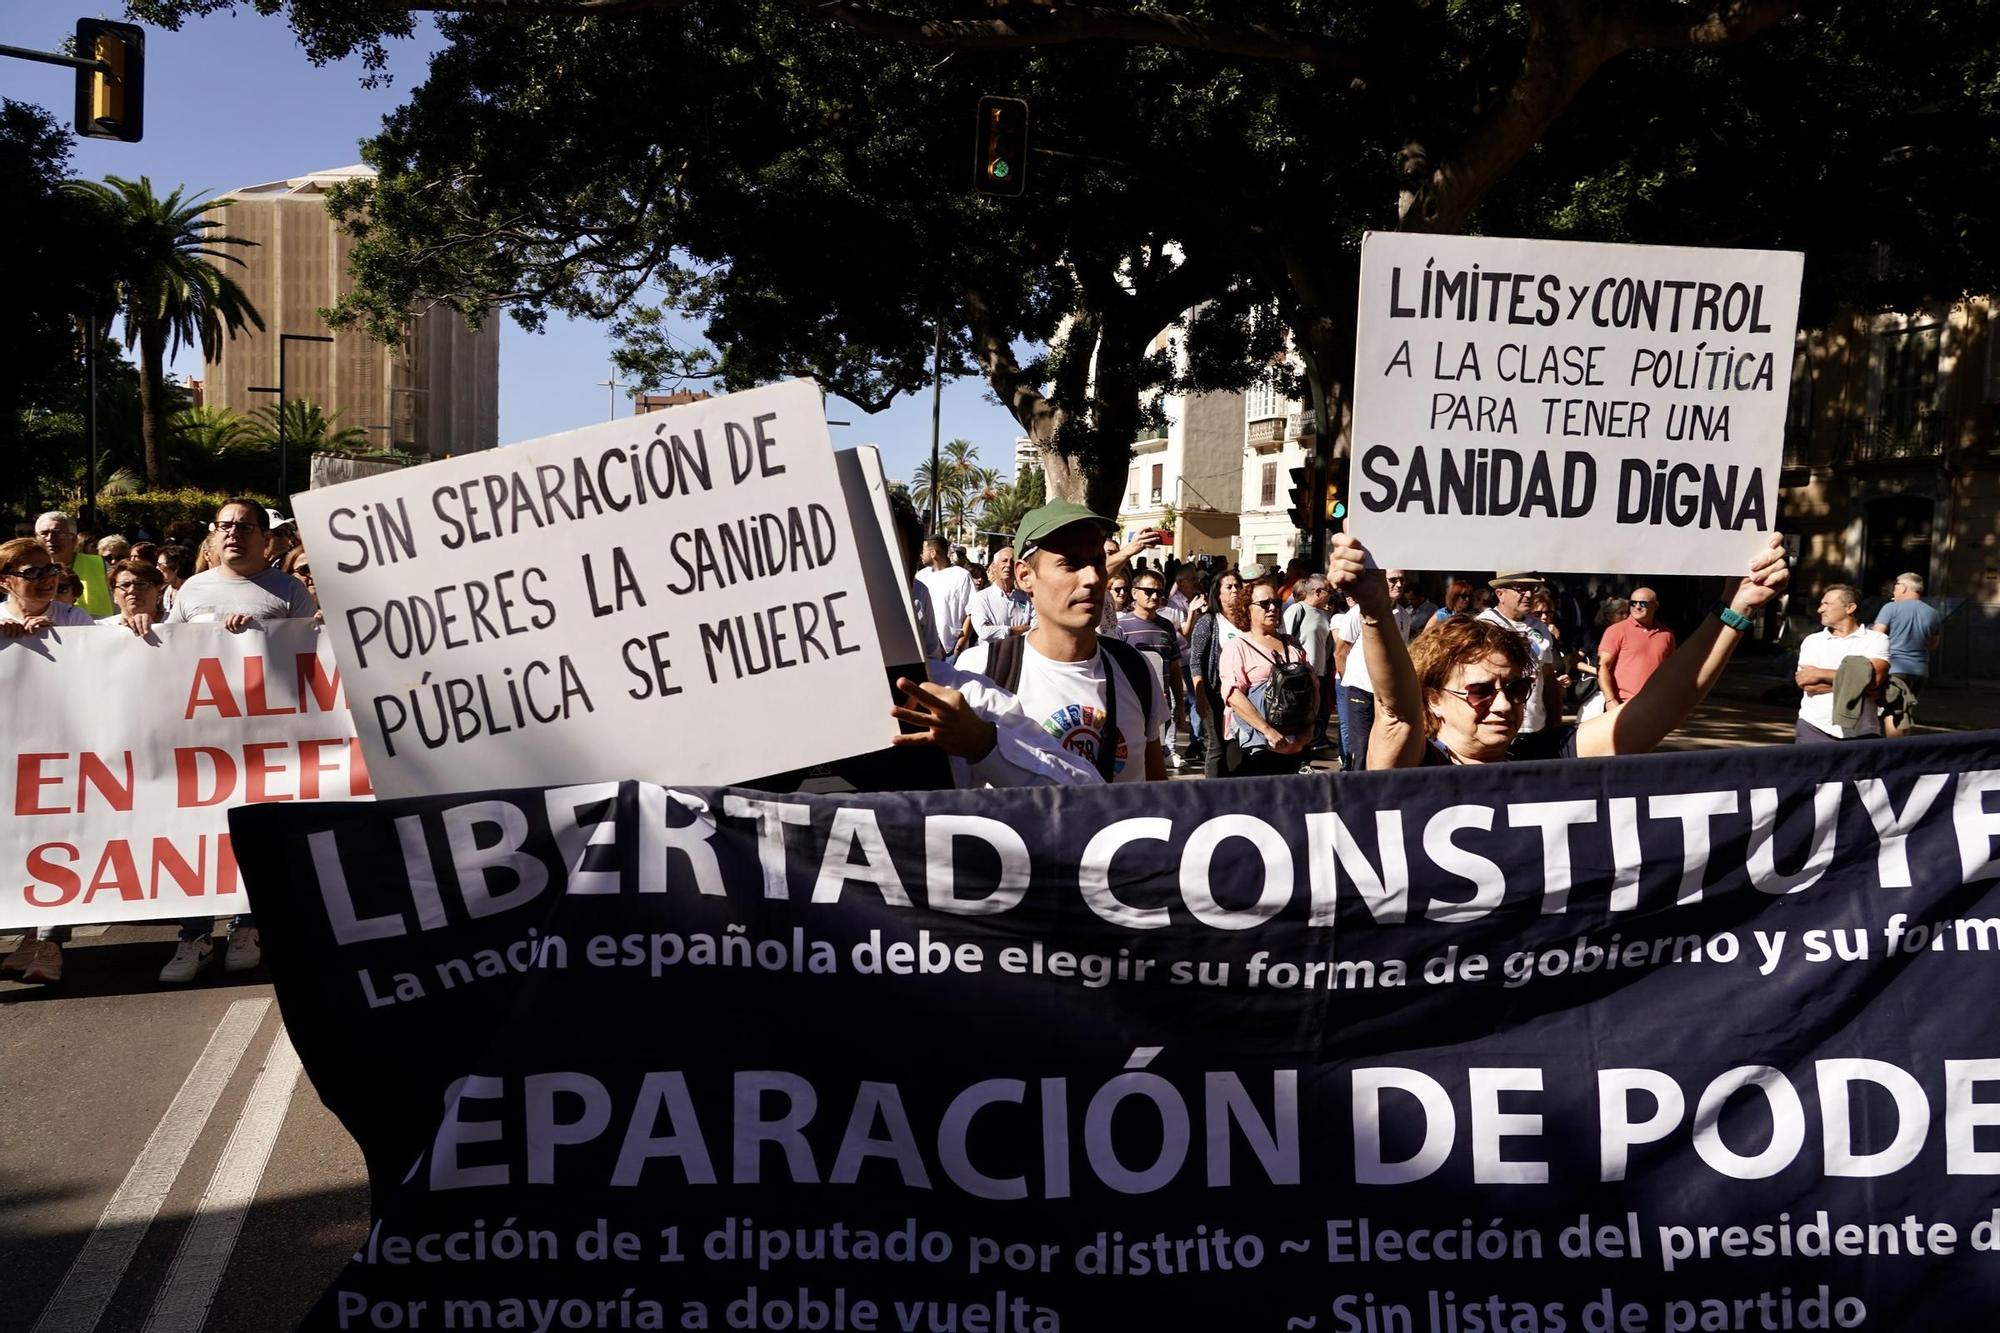 Marea Blanca se manifiesta por la sanidad pública en Málaga